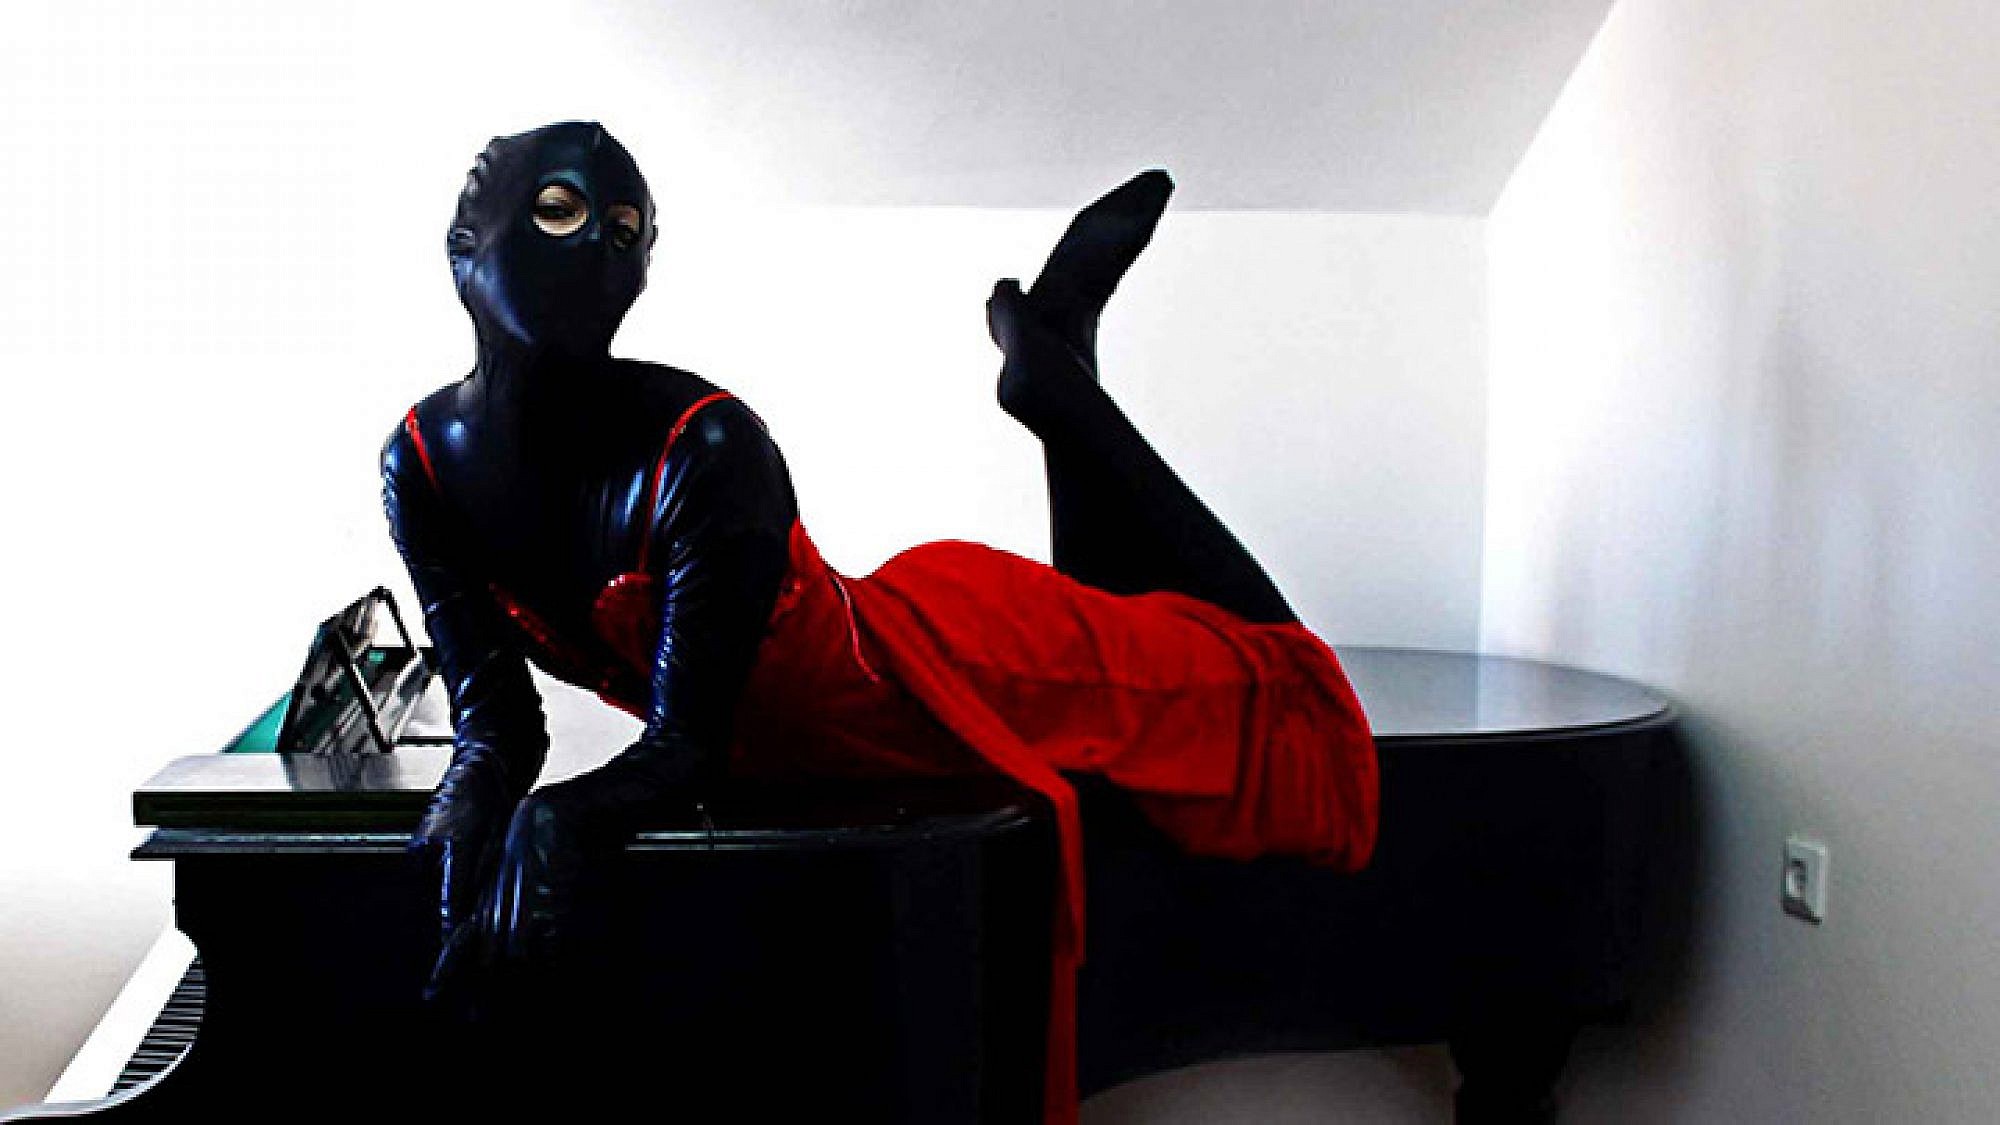 נועה קרמר בתור השחורה, צילום מתוך עמוד הפייסבוק "השחורה"